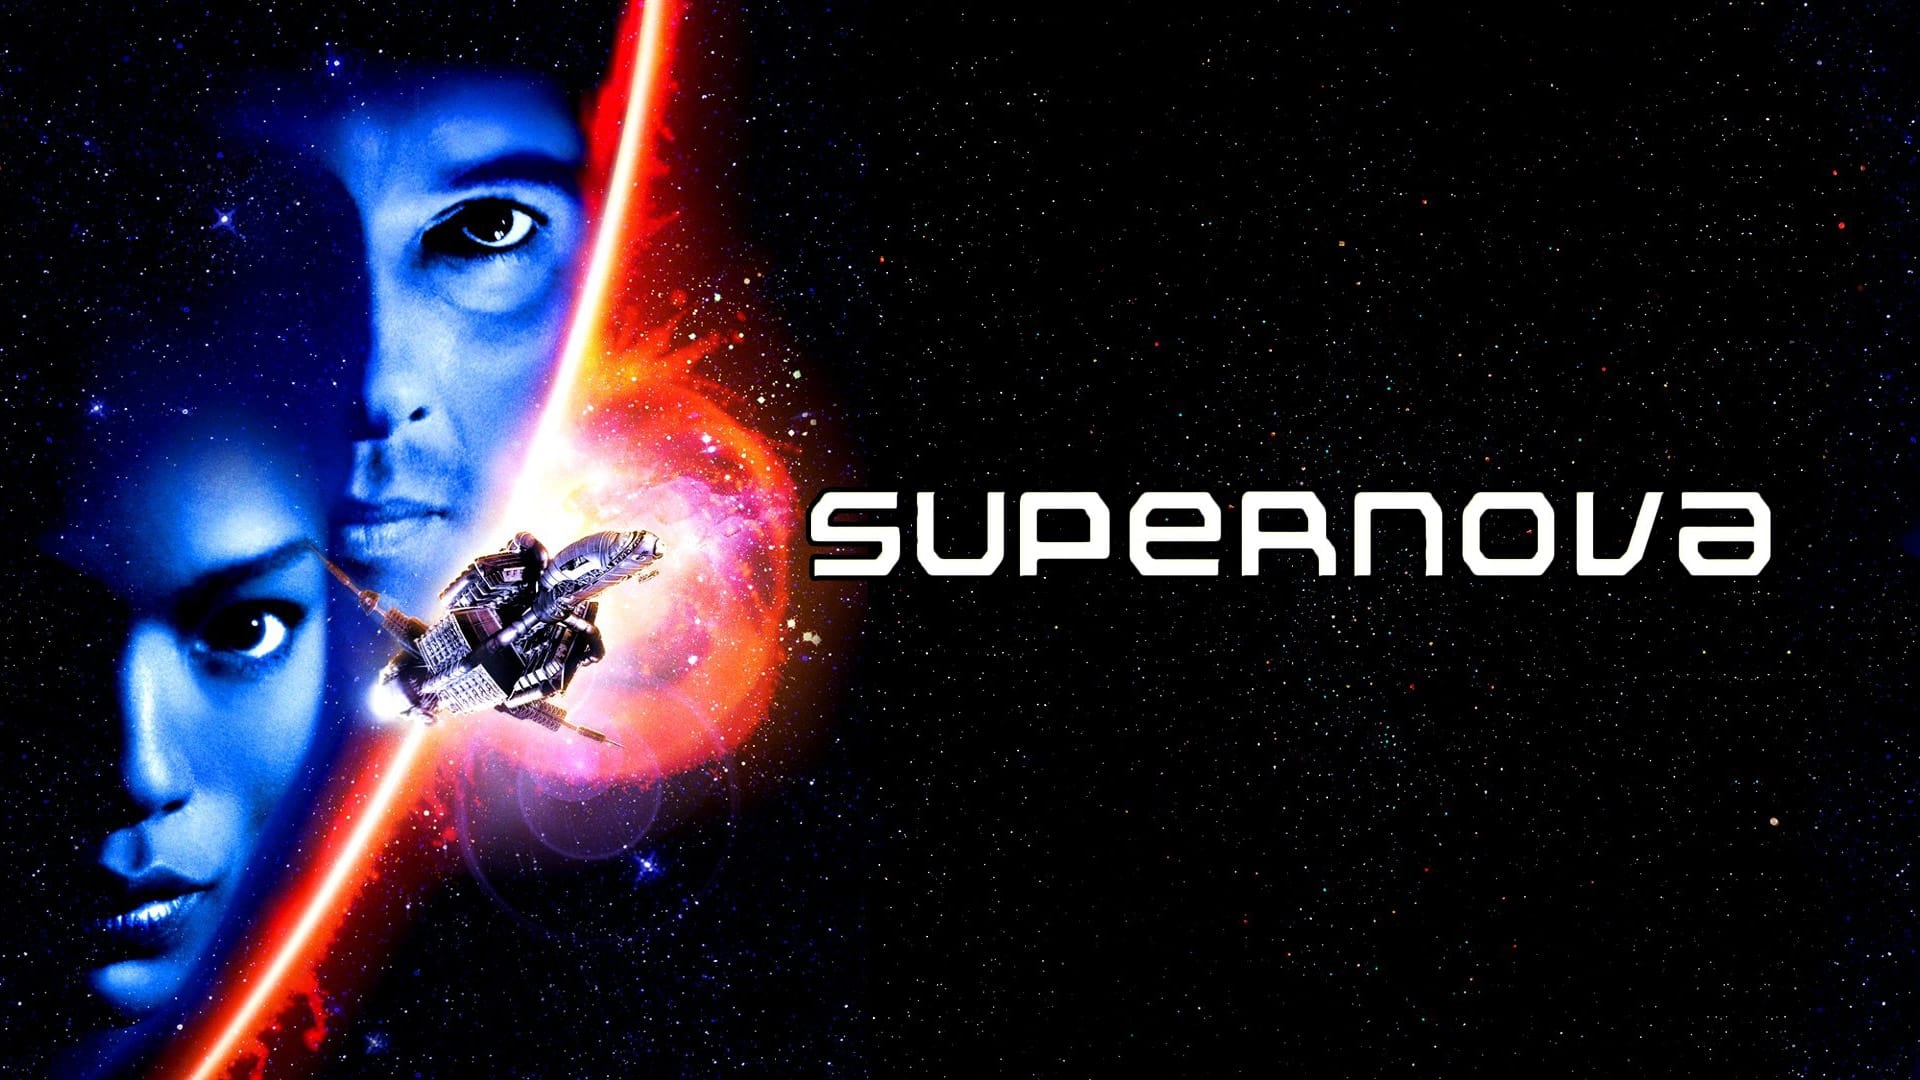 Supernova (El fin del universo) (2000)